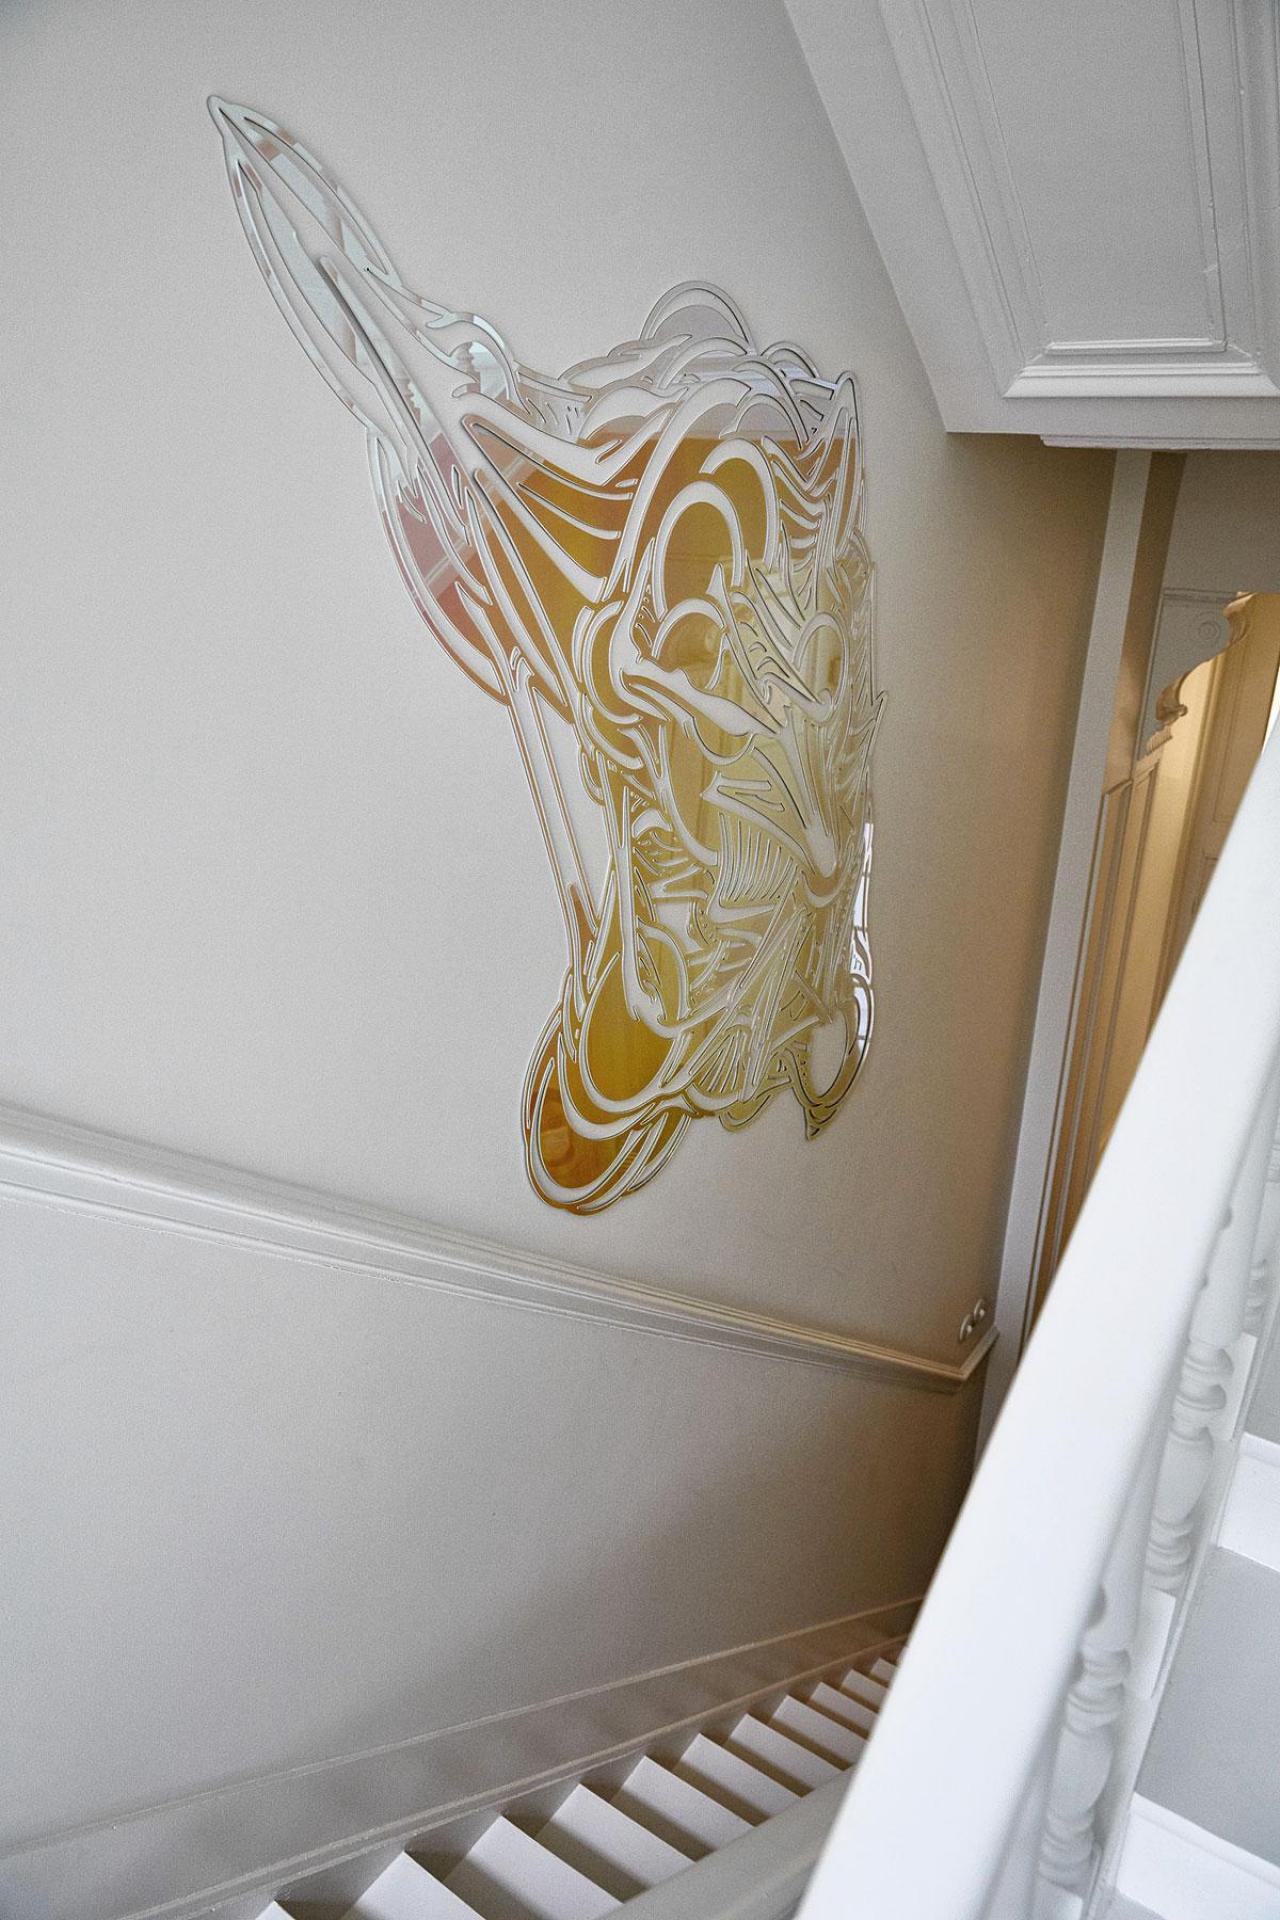 Une œuvre en Plexi de Jean-Luc Moerman, dans la cage d’escalier toute blanche.